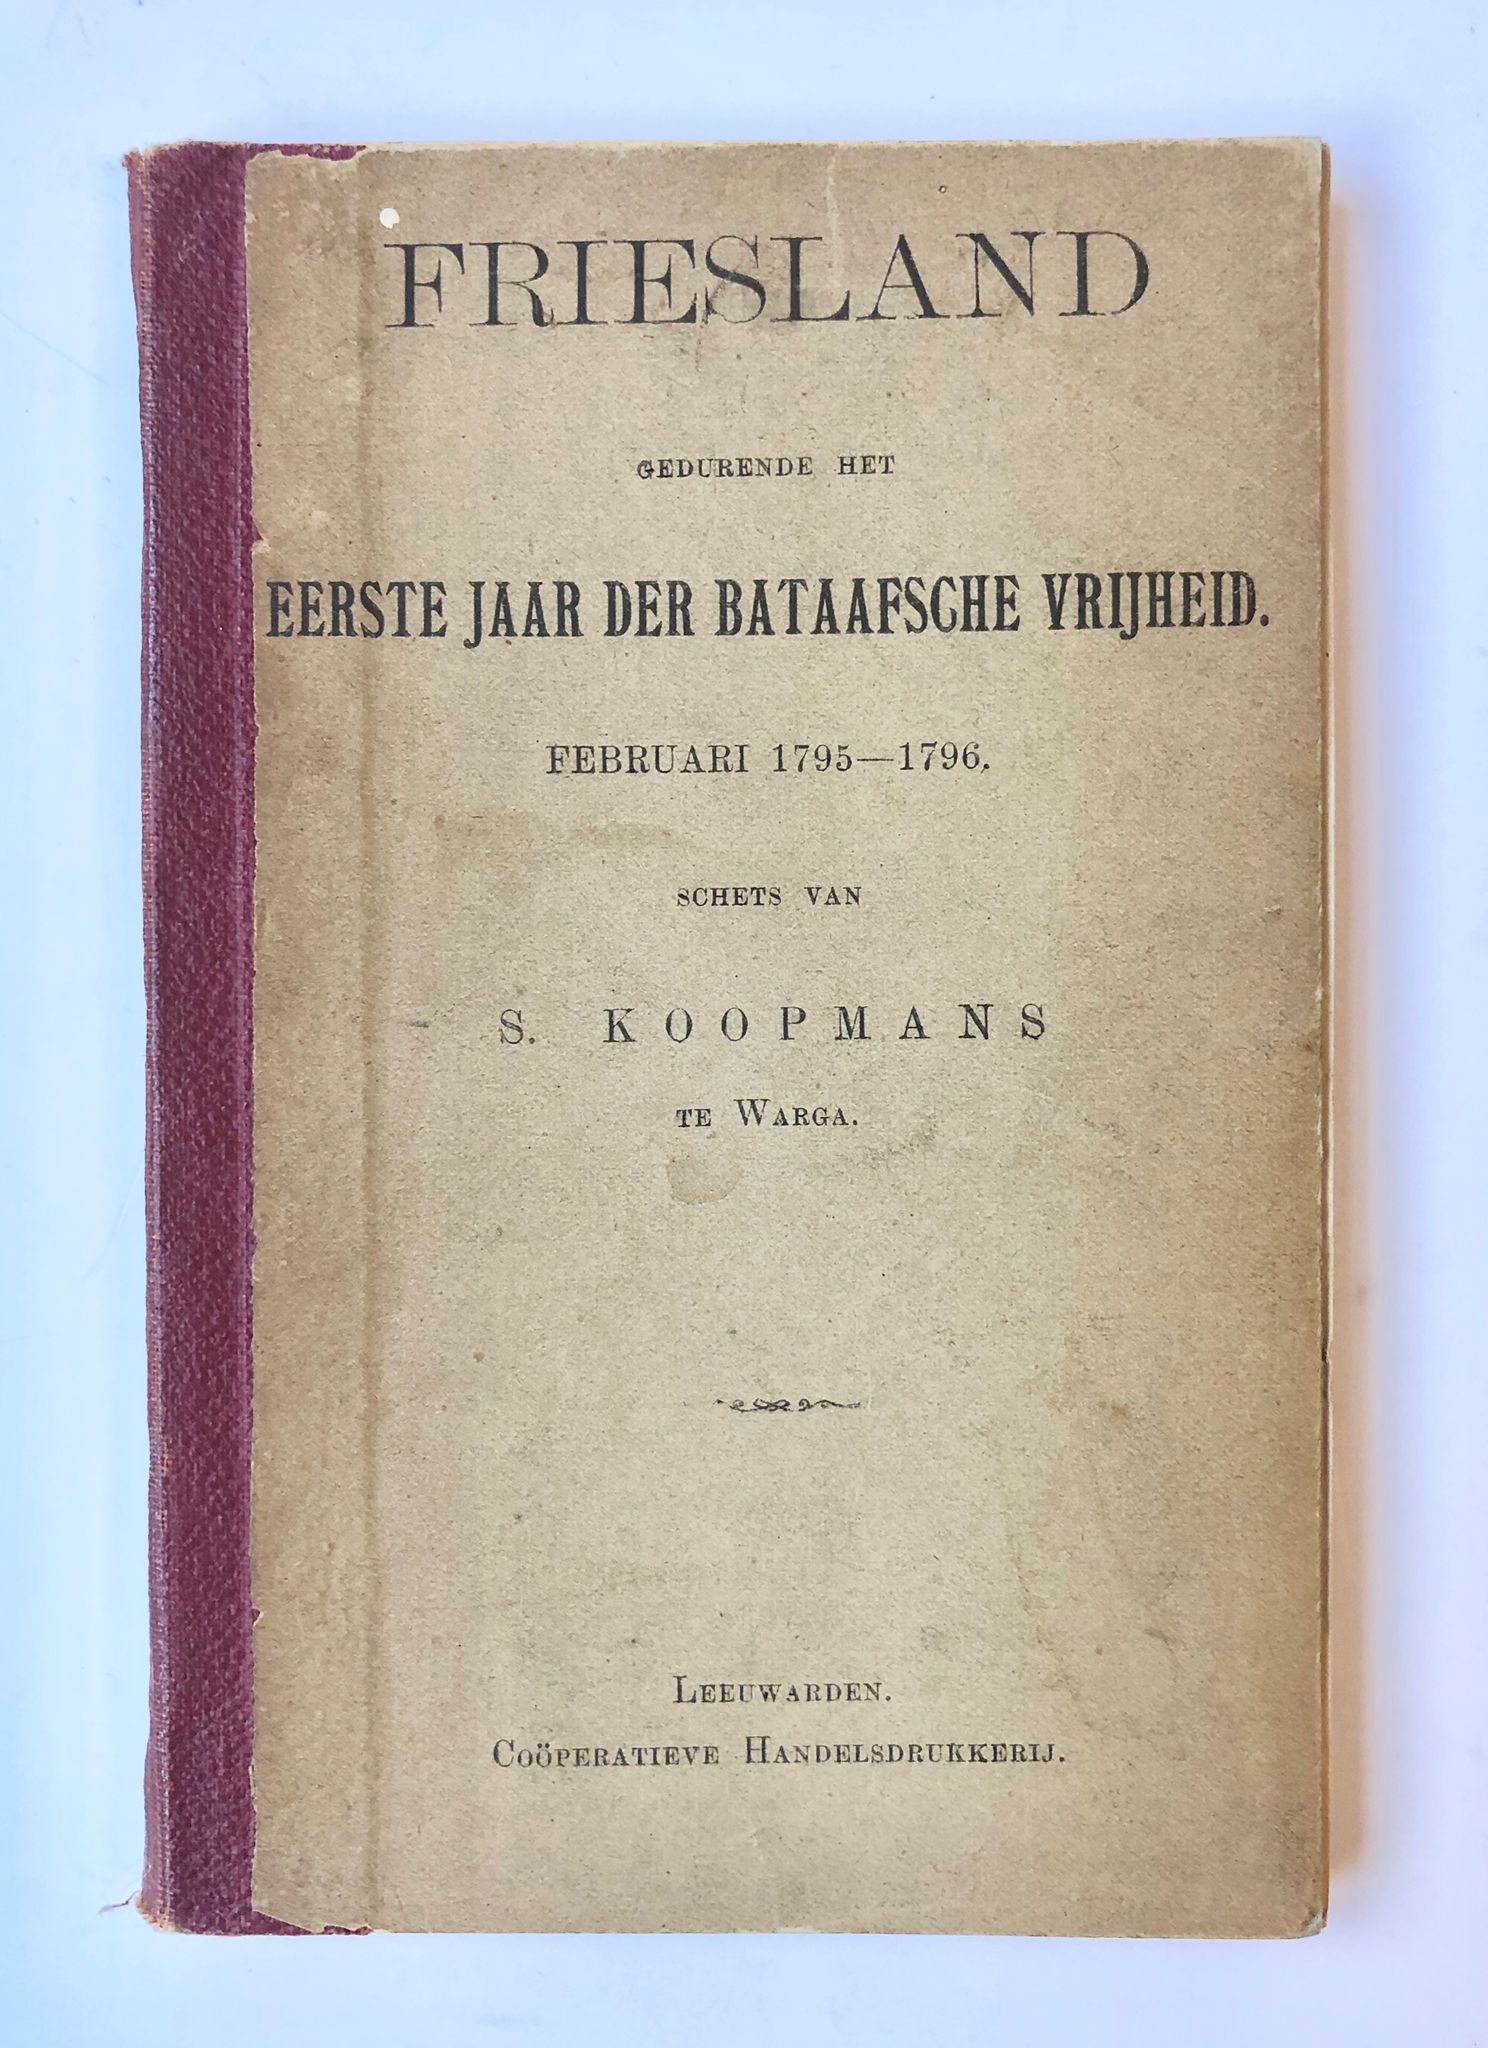 [Batavian Republic, [1888], Friesland] Friesland gedurende het Eerste Jaar der Bataafsche Vrijheid, Februari 1795 – 1796, Coöperatieve Handelsdrukkerij, Leeuwarden [1888], 119 pp.